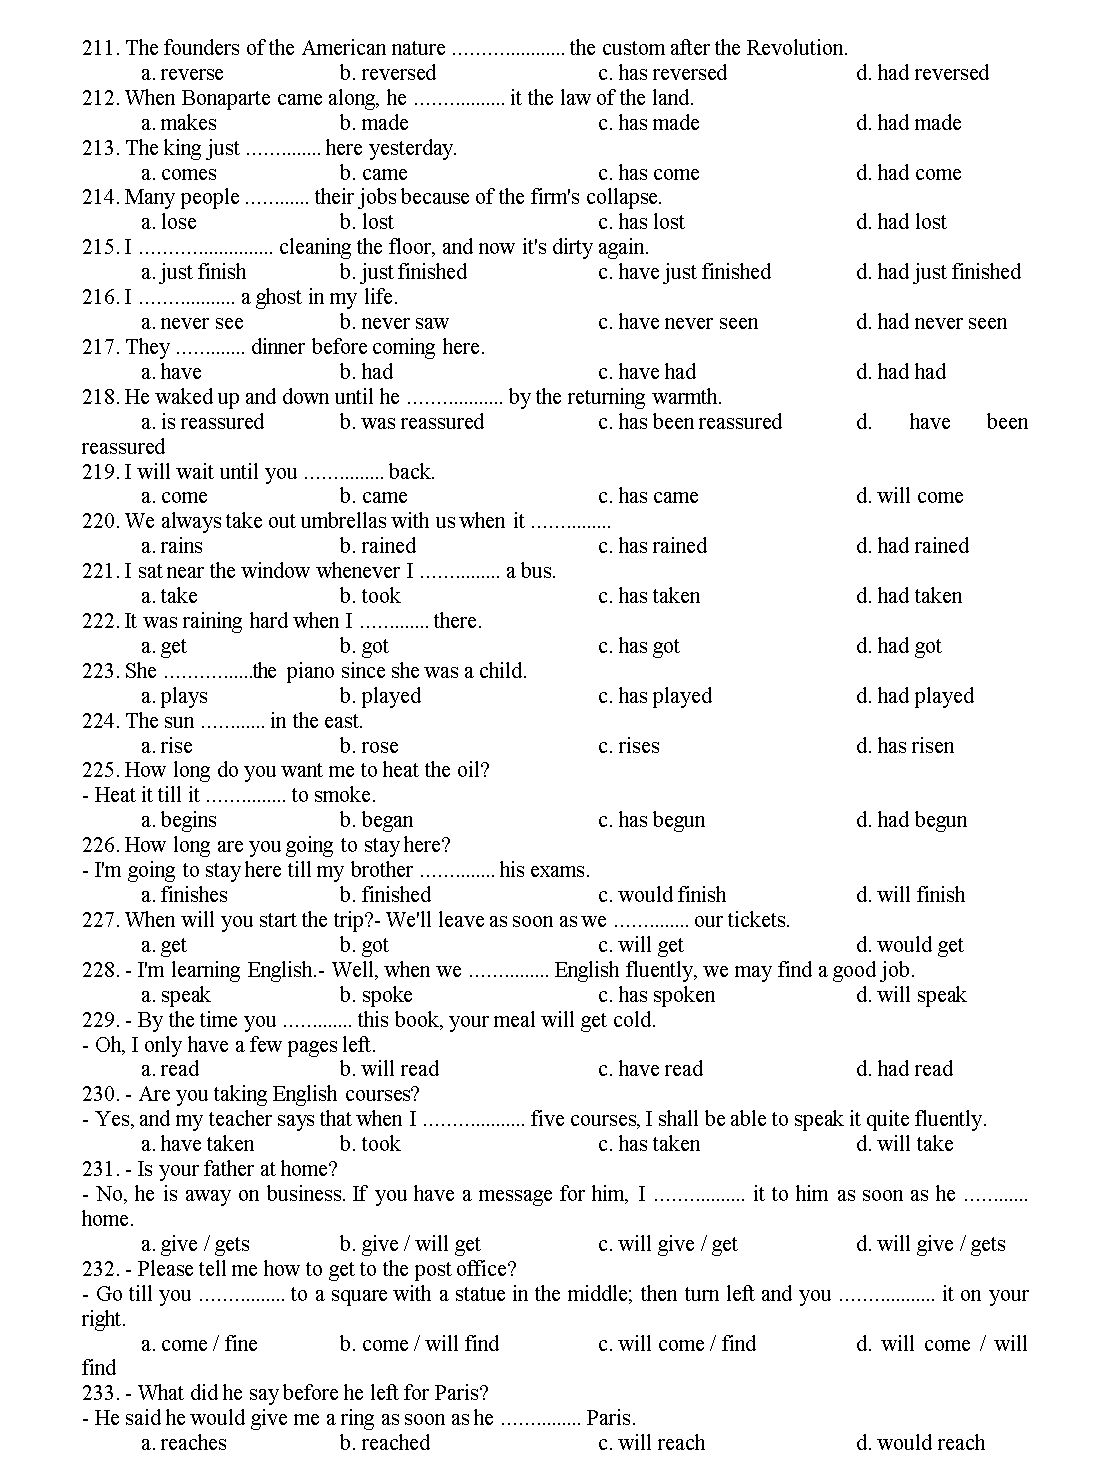 300 câu trắc nghiệm ngữ pháp Tiếng Anh trang 10